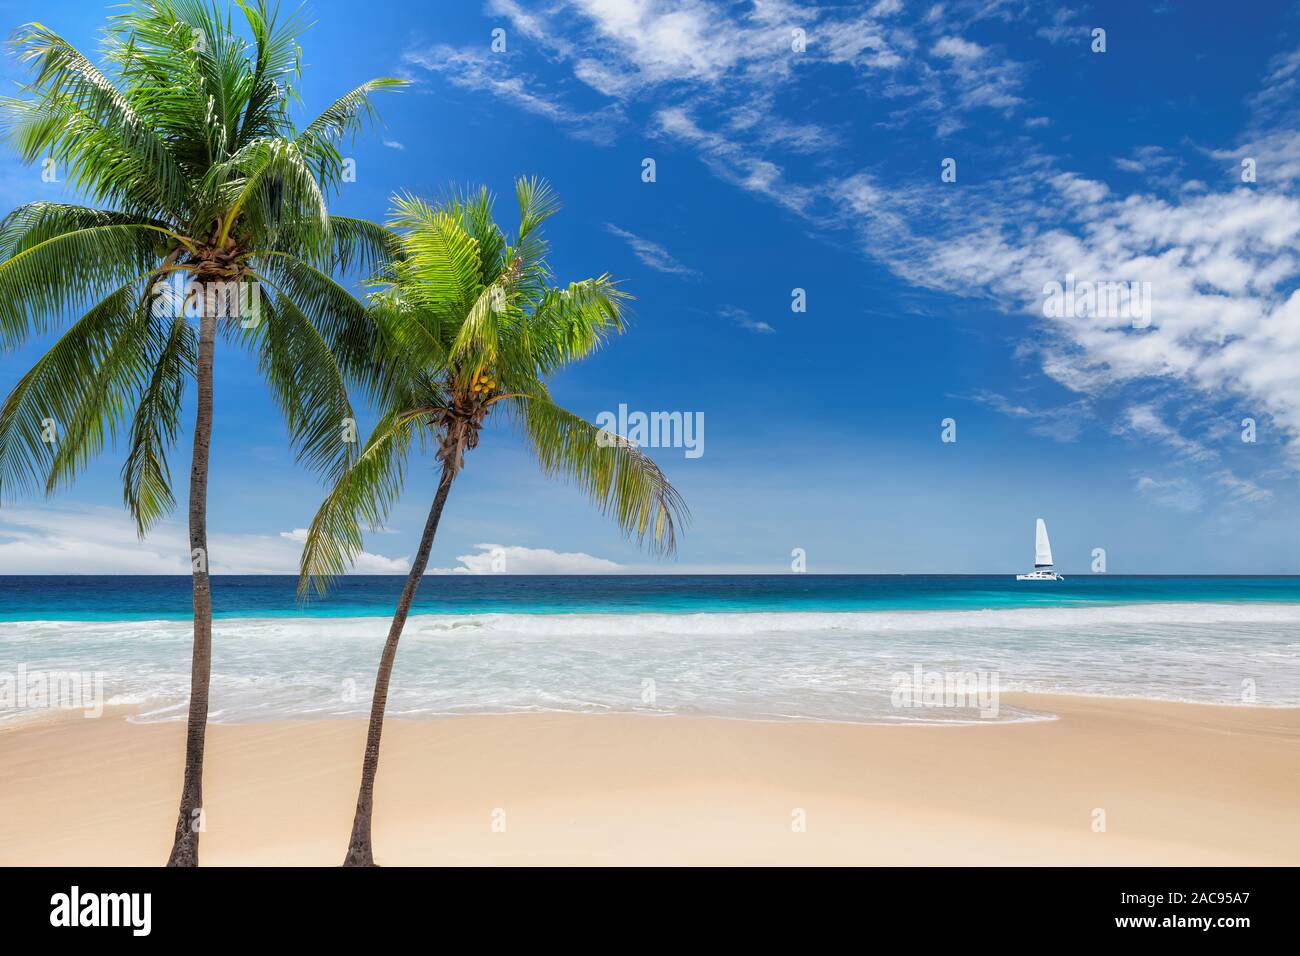 Belle plage de sable avec des palmiers et un bateau à voile dans la mer turquoise des Caraïbes Banque D'Images